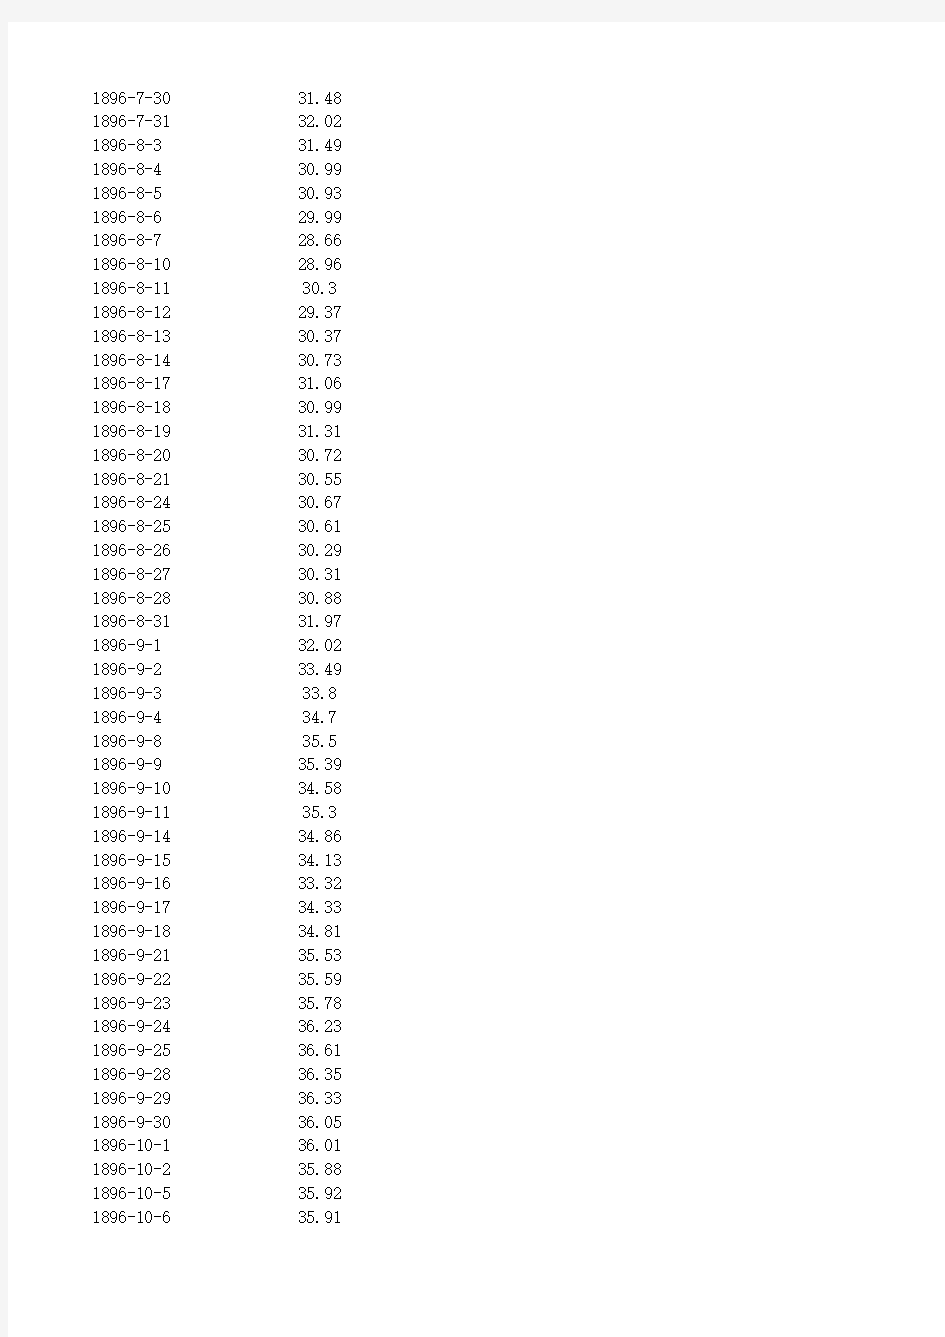 道琼斯指数完整历史收盘价数据(1896-2012)